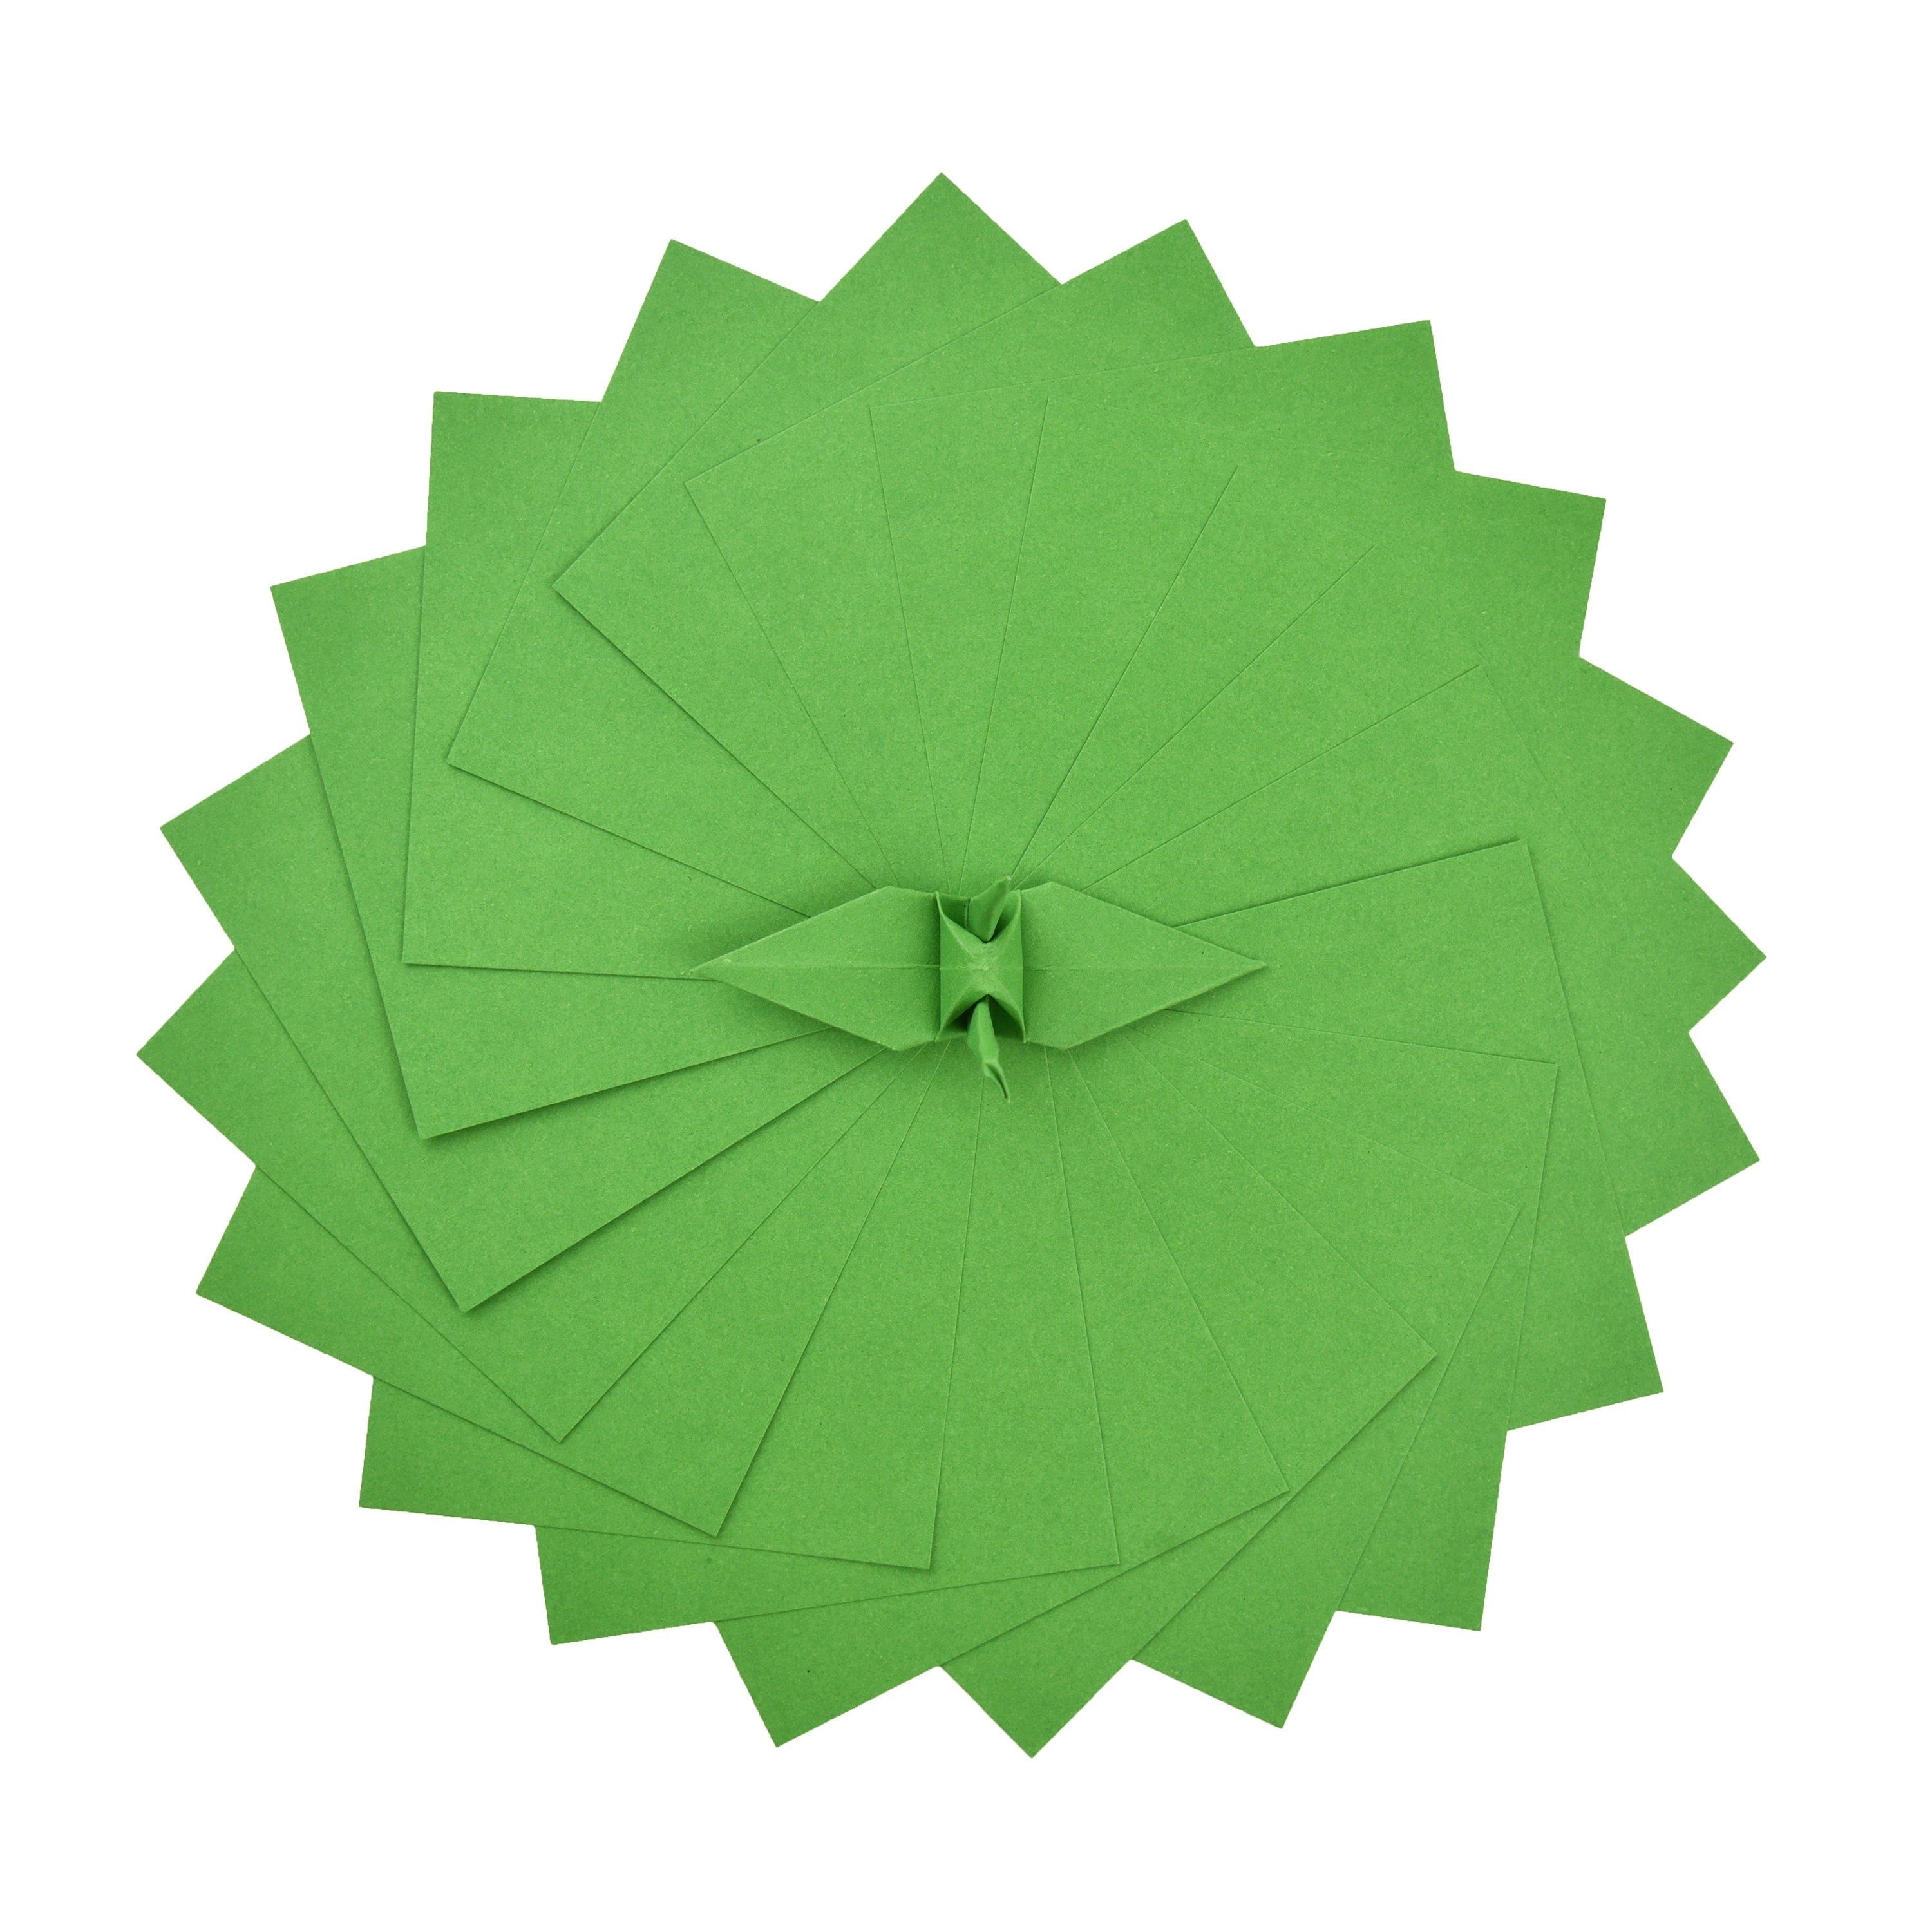 100 fogli di carta origami - 6x6 pollici - Confezione di carta quadrata per piegare, gru origami e decorazioni - S22